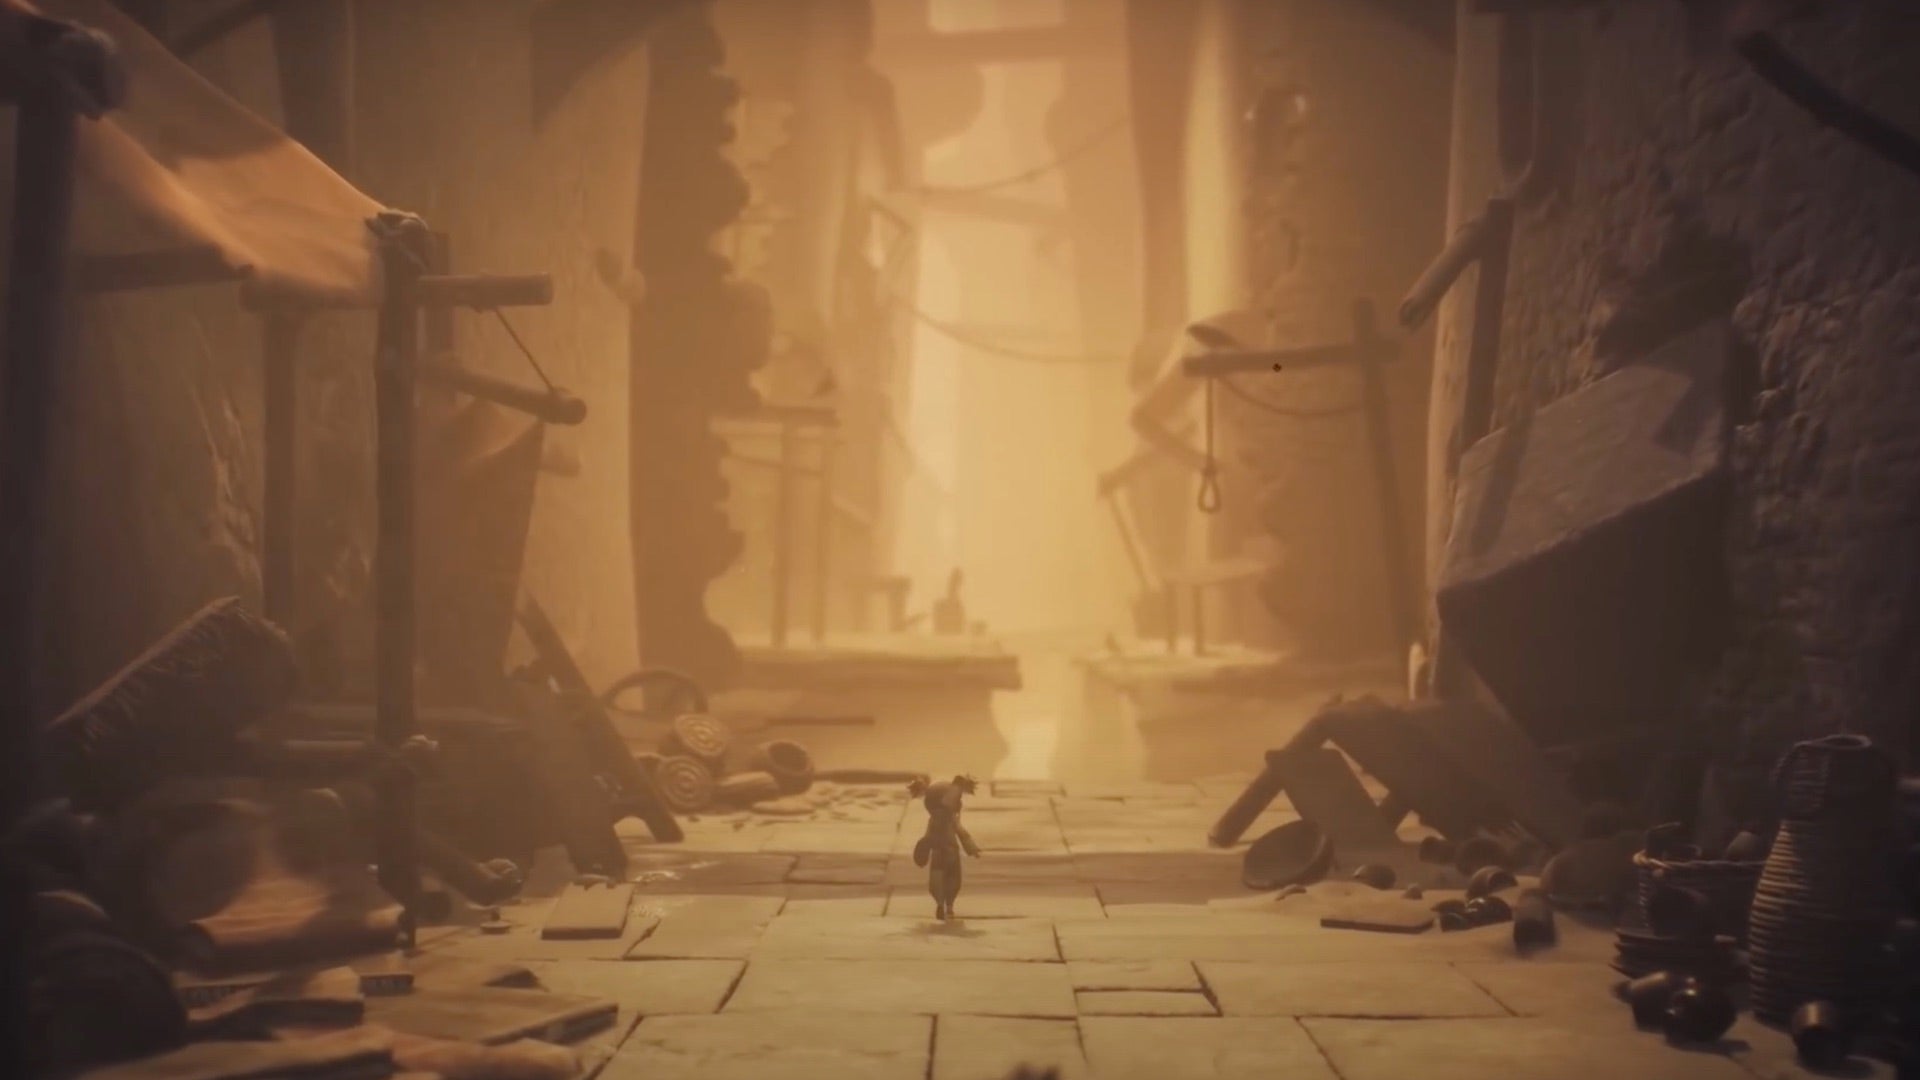 Una schermata di Little Nightmares 3 che mostra uno dei suoi due protagonisti che cammina lungo le strade sabbiose di una città antica in rovina, con bancarelle di mercato crollate ai lati.